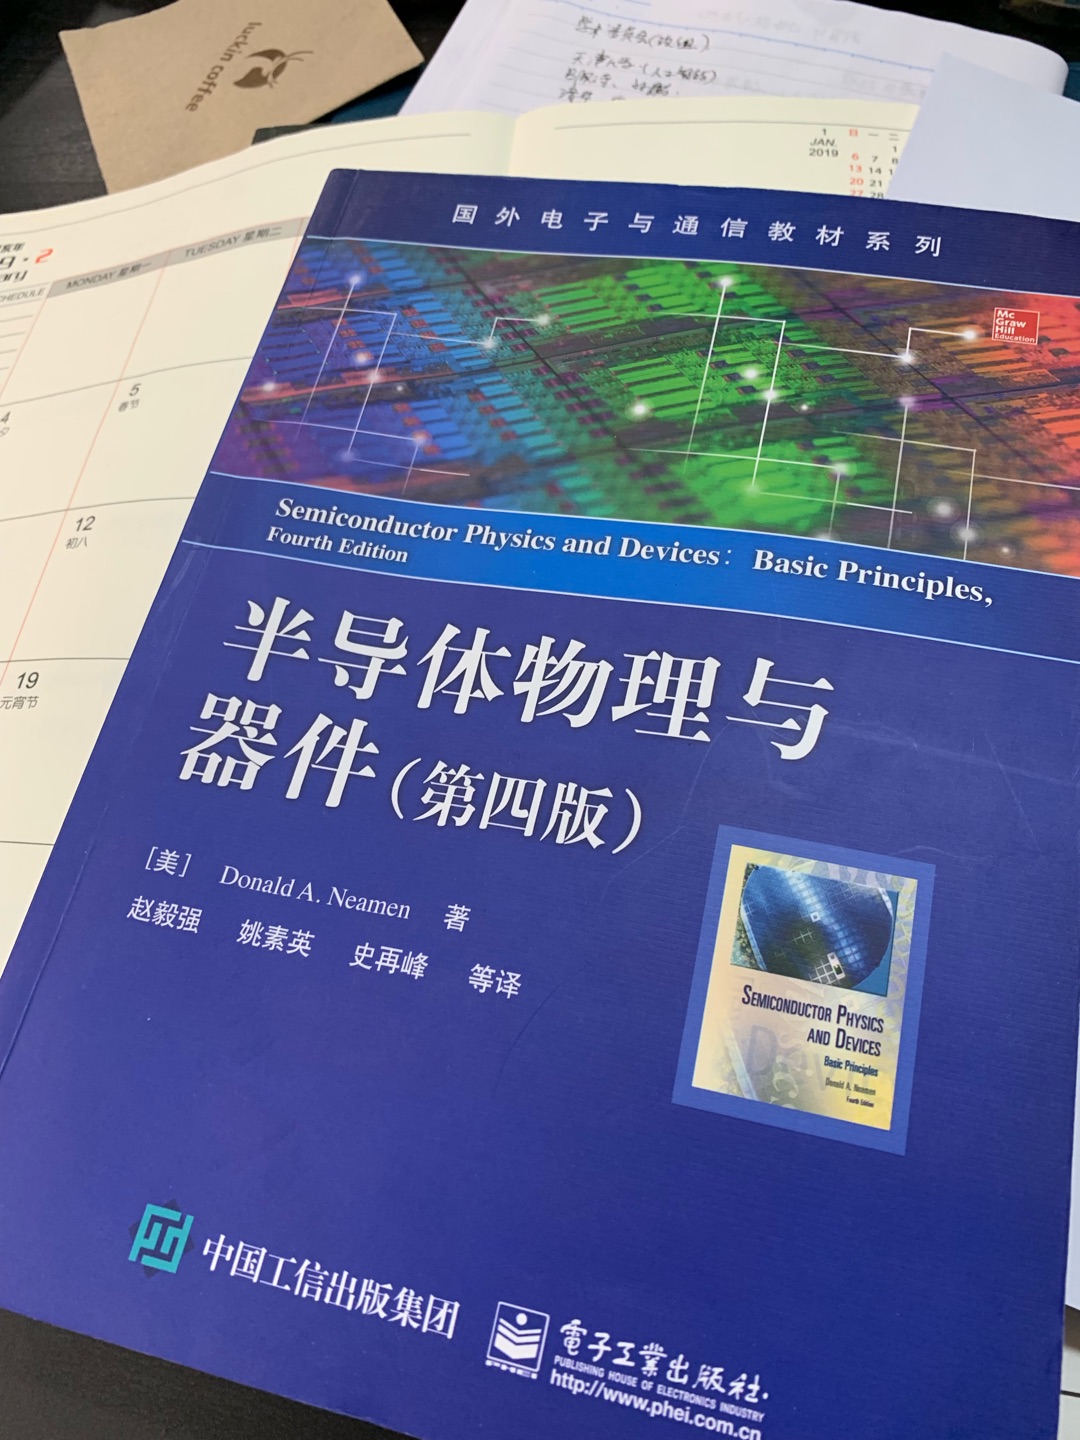 原版书籍翻译本，还是外文书说的透彻简单，这本书适用于专业人士阅读，外行请选择《芯片制造》这本